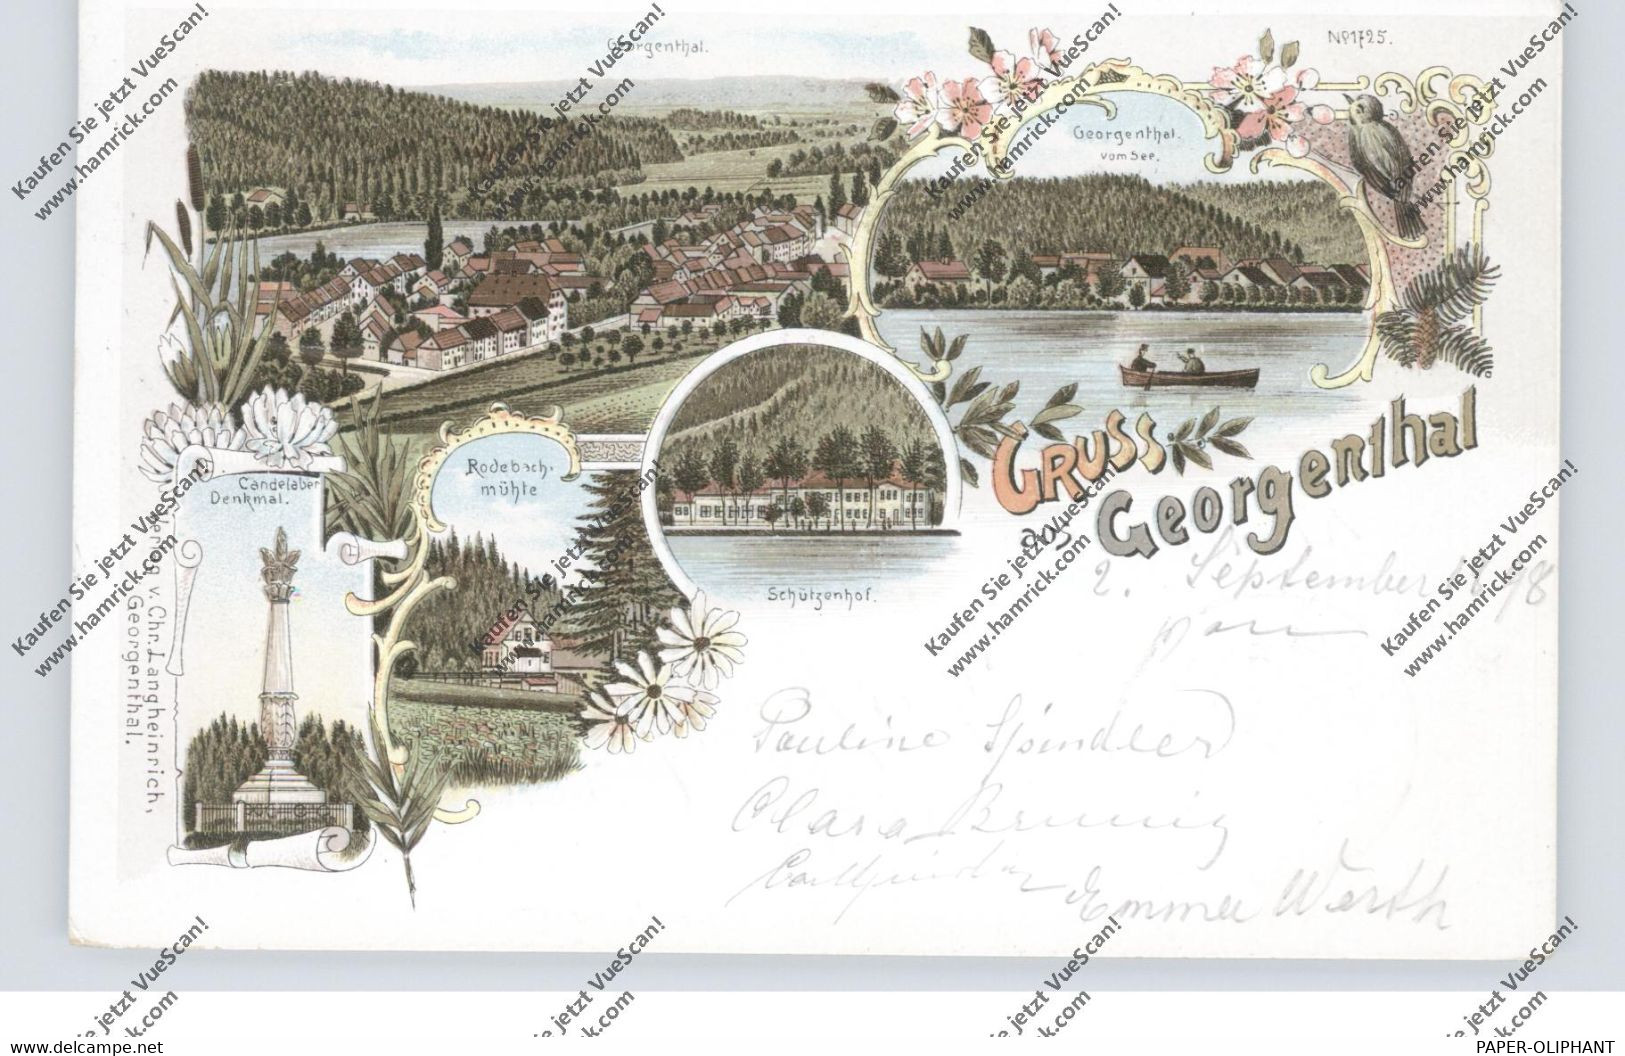 0-5805 GEORGENTHAL, Lithographie 1898, Schützenhof, Rodebachmühle, Candelaber-Denkmal, See, Dorfansicht - Georgenthal